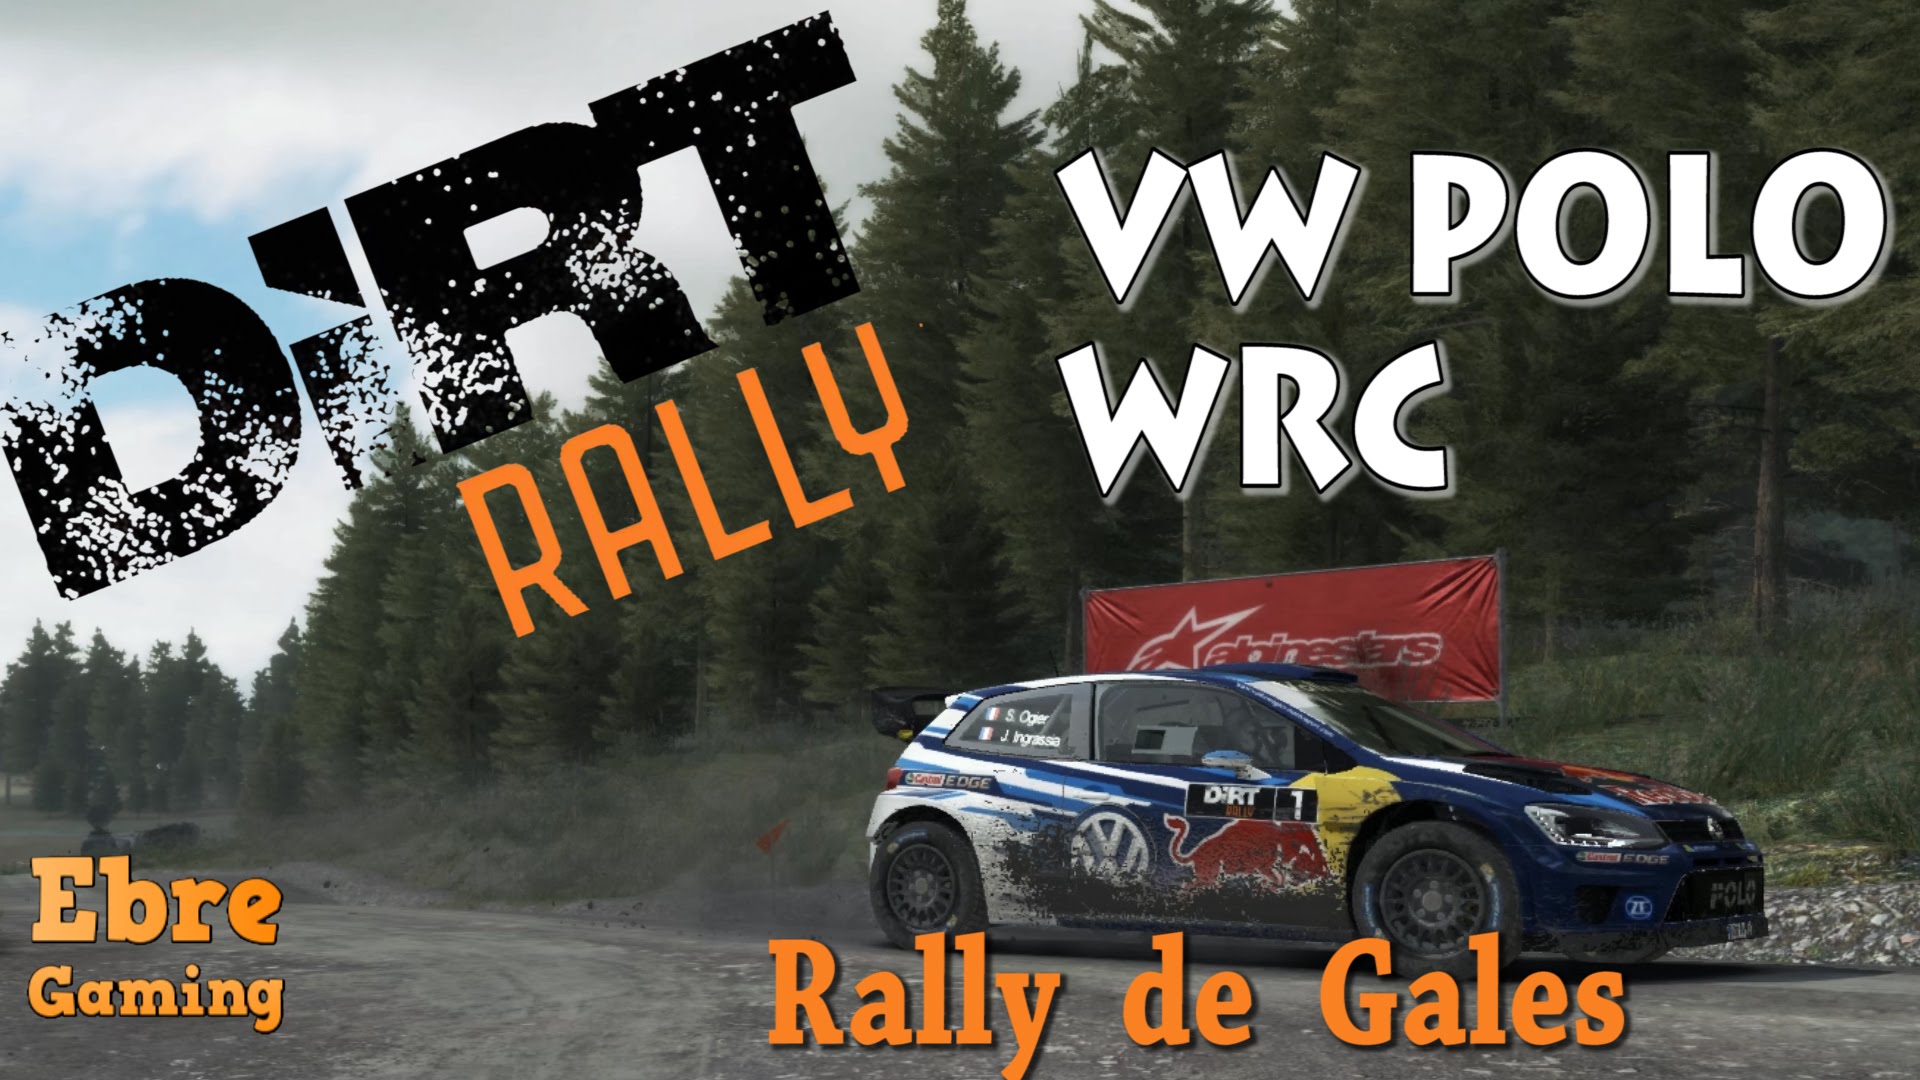 Tram al rally de Gales amb el Polo WRC || Dirt Rally de Marina Cuito